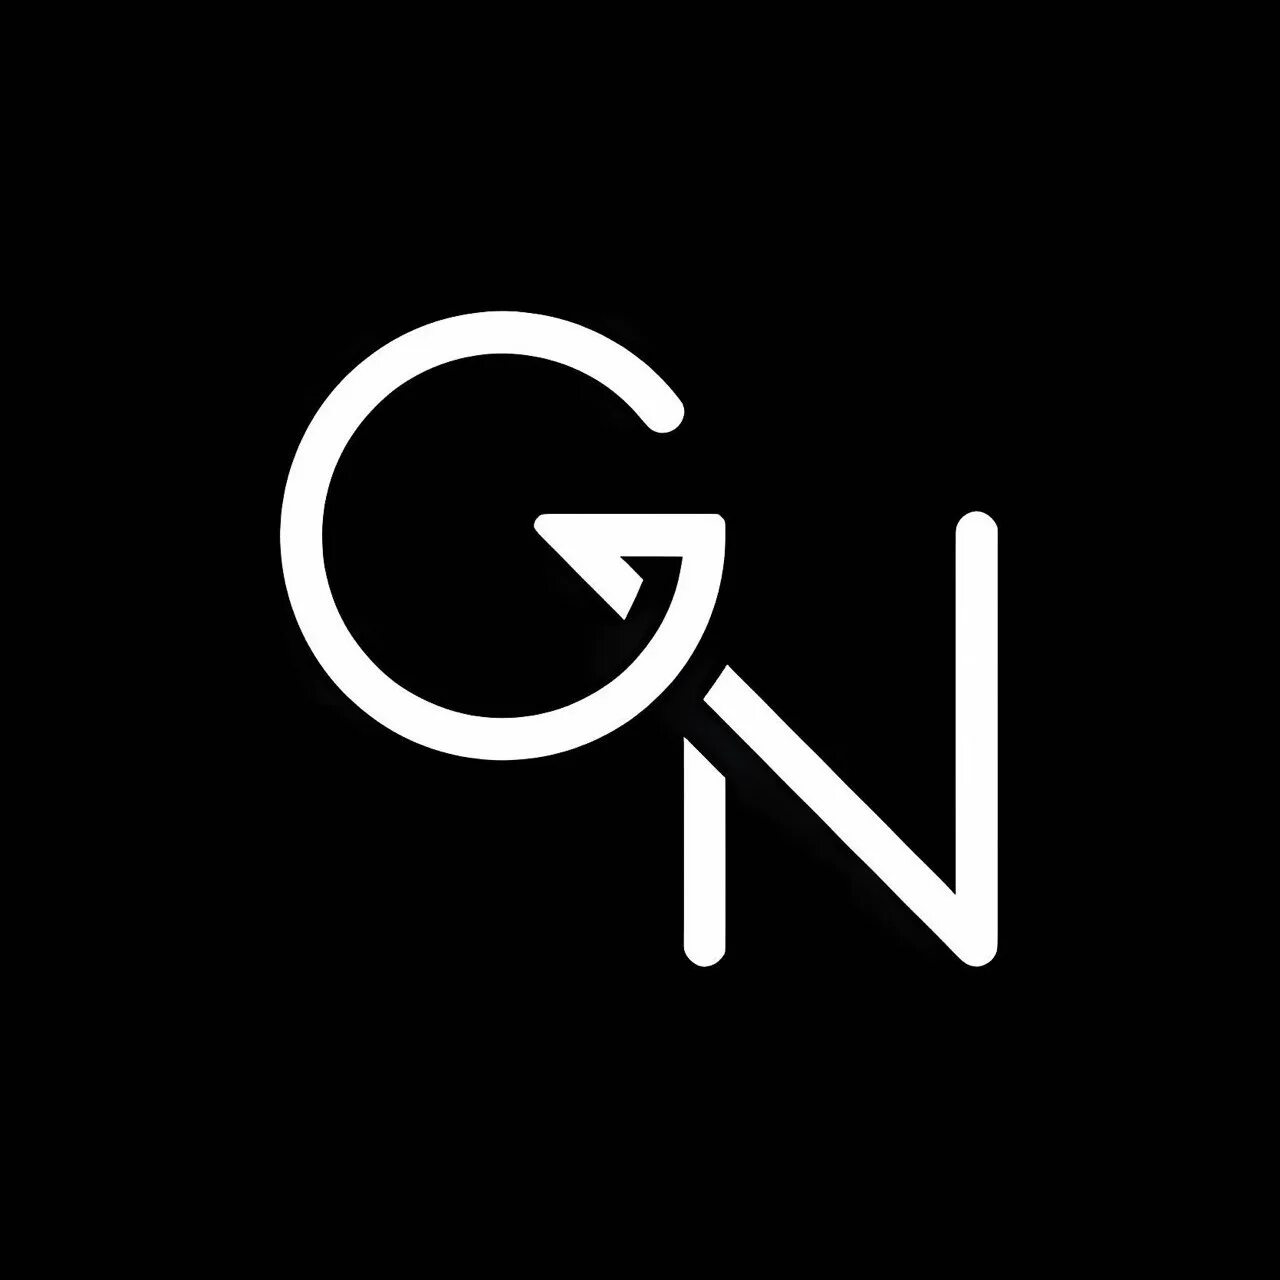 Логотип GN. Буква g на черном фоне. Буквы ng для логотипа. Логотип с буквой n.